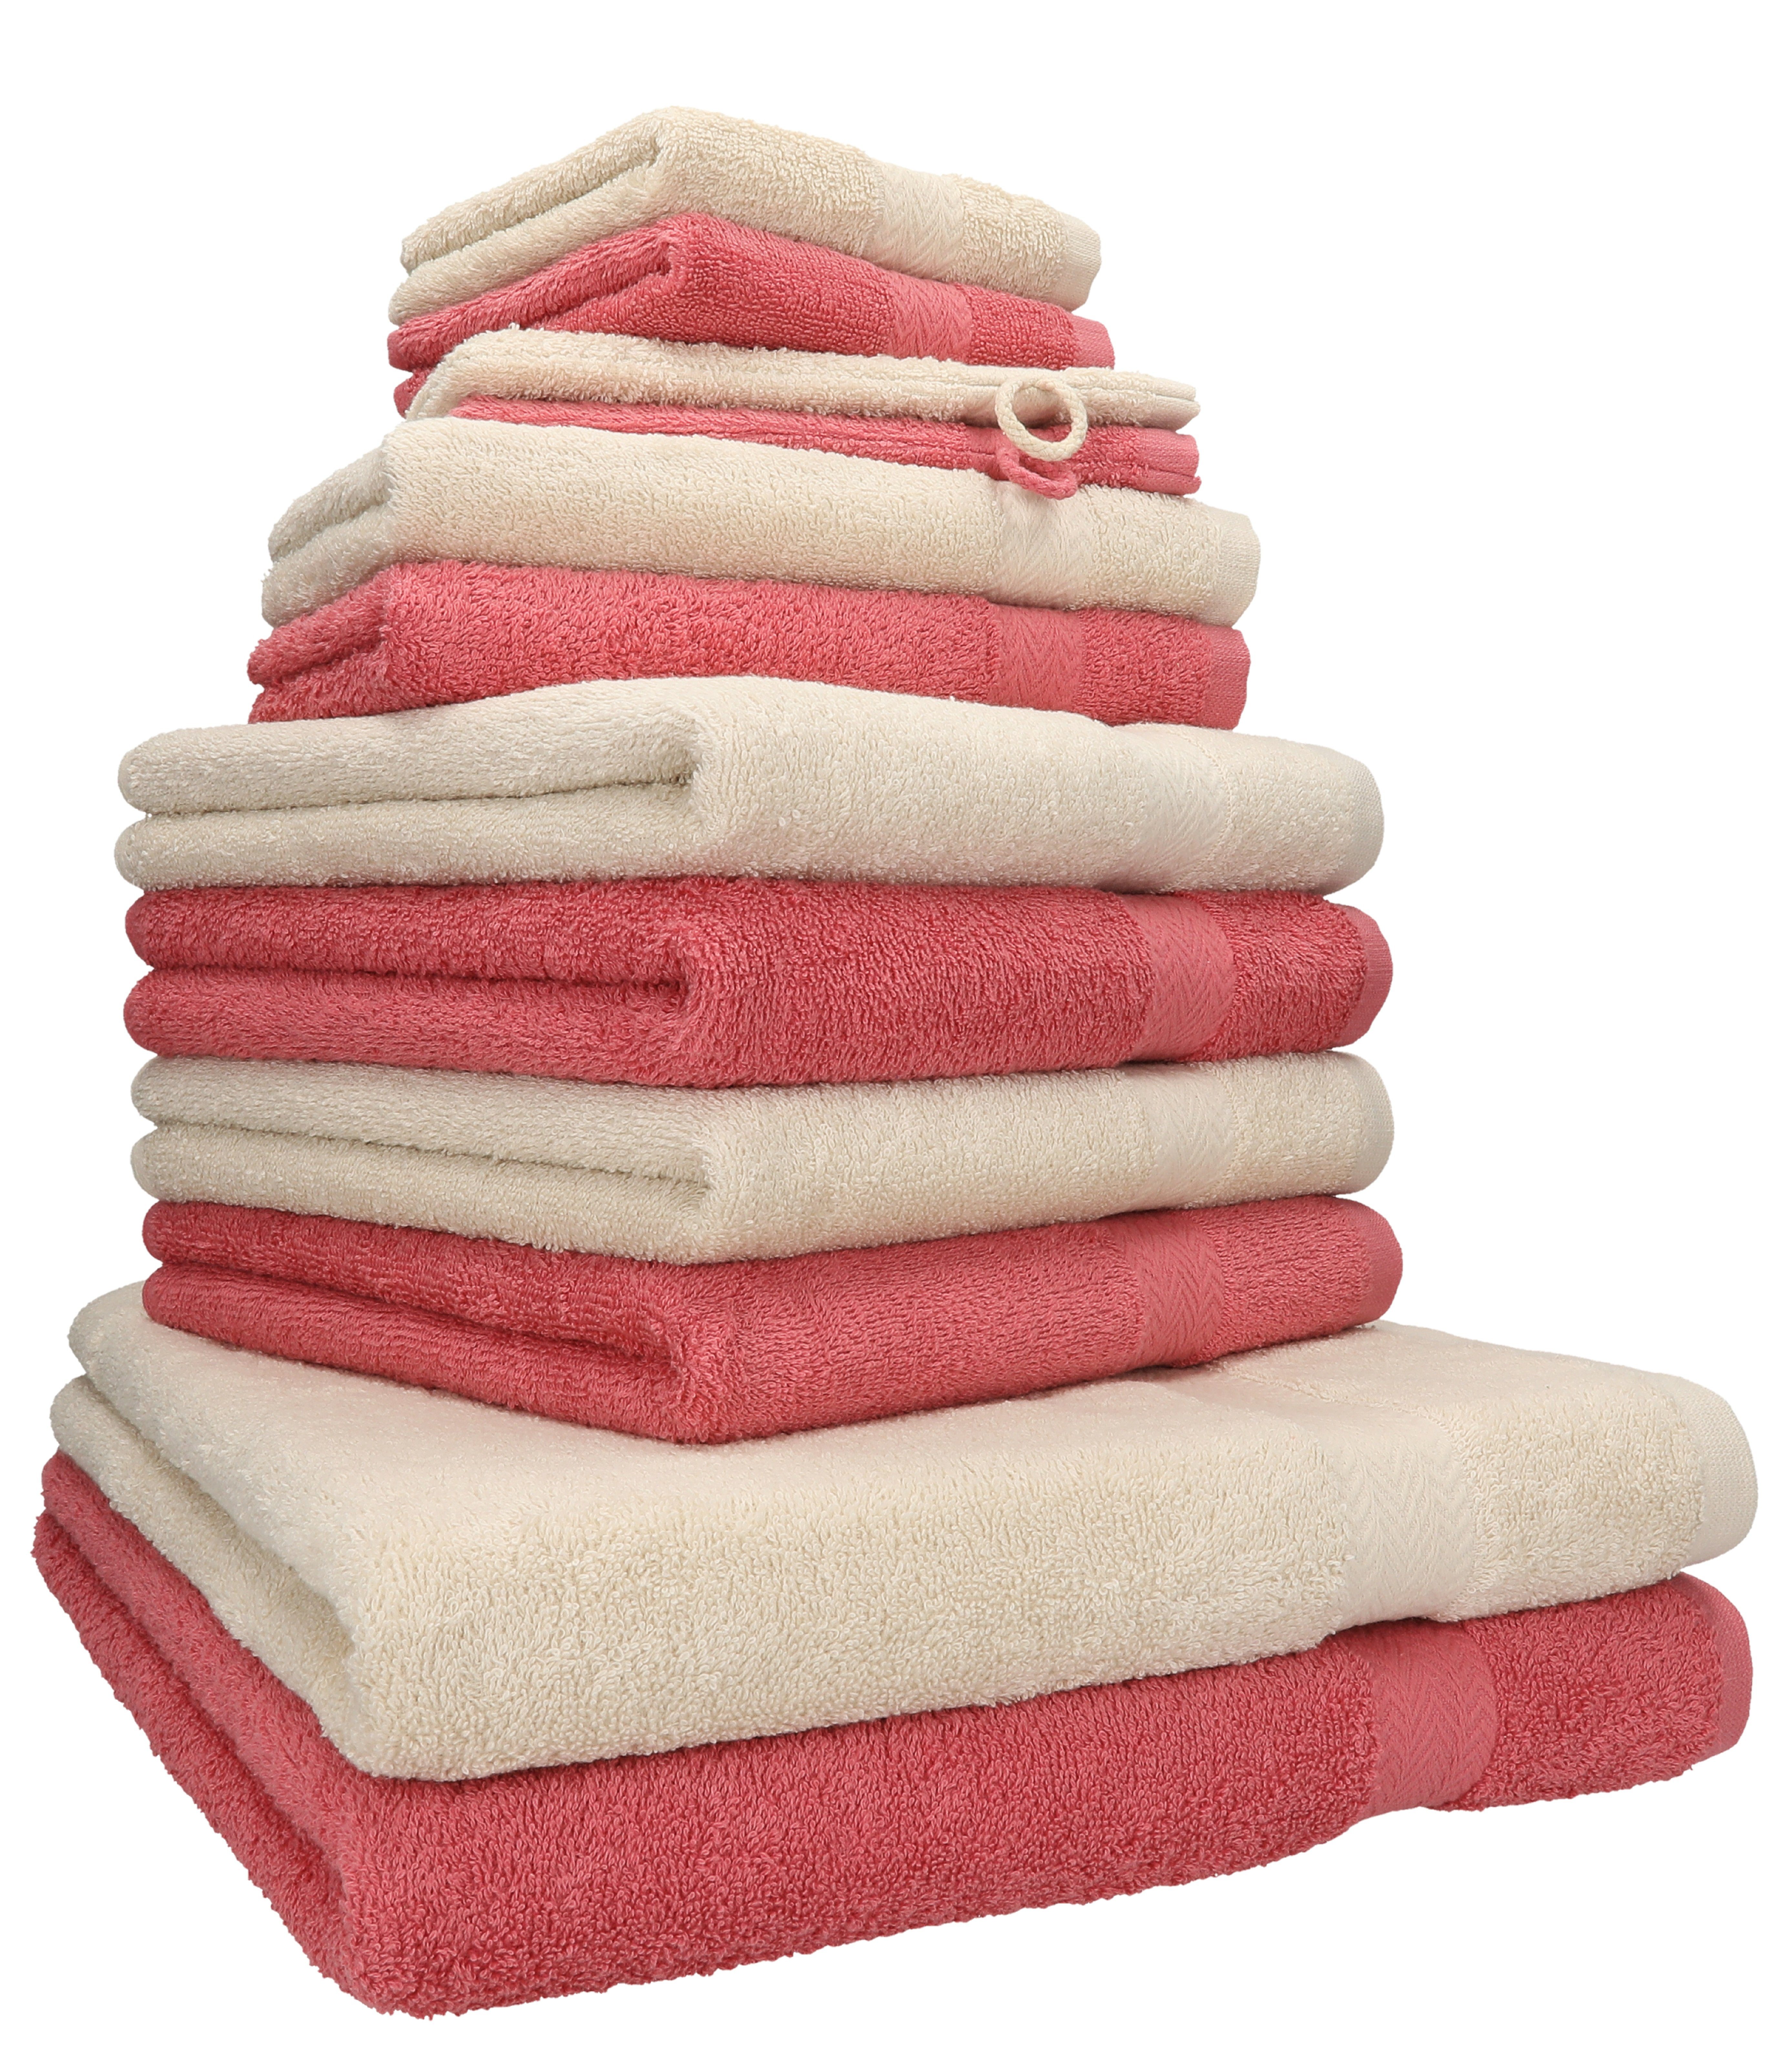 (12-tlg) Handtuch 100% Handtuch Farbe Sand/Himbeere, Set Betz 12-tlg. Set Baumwolle, Premium